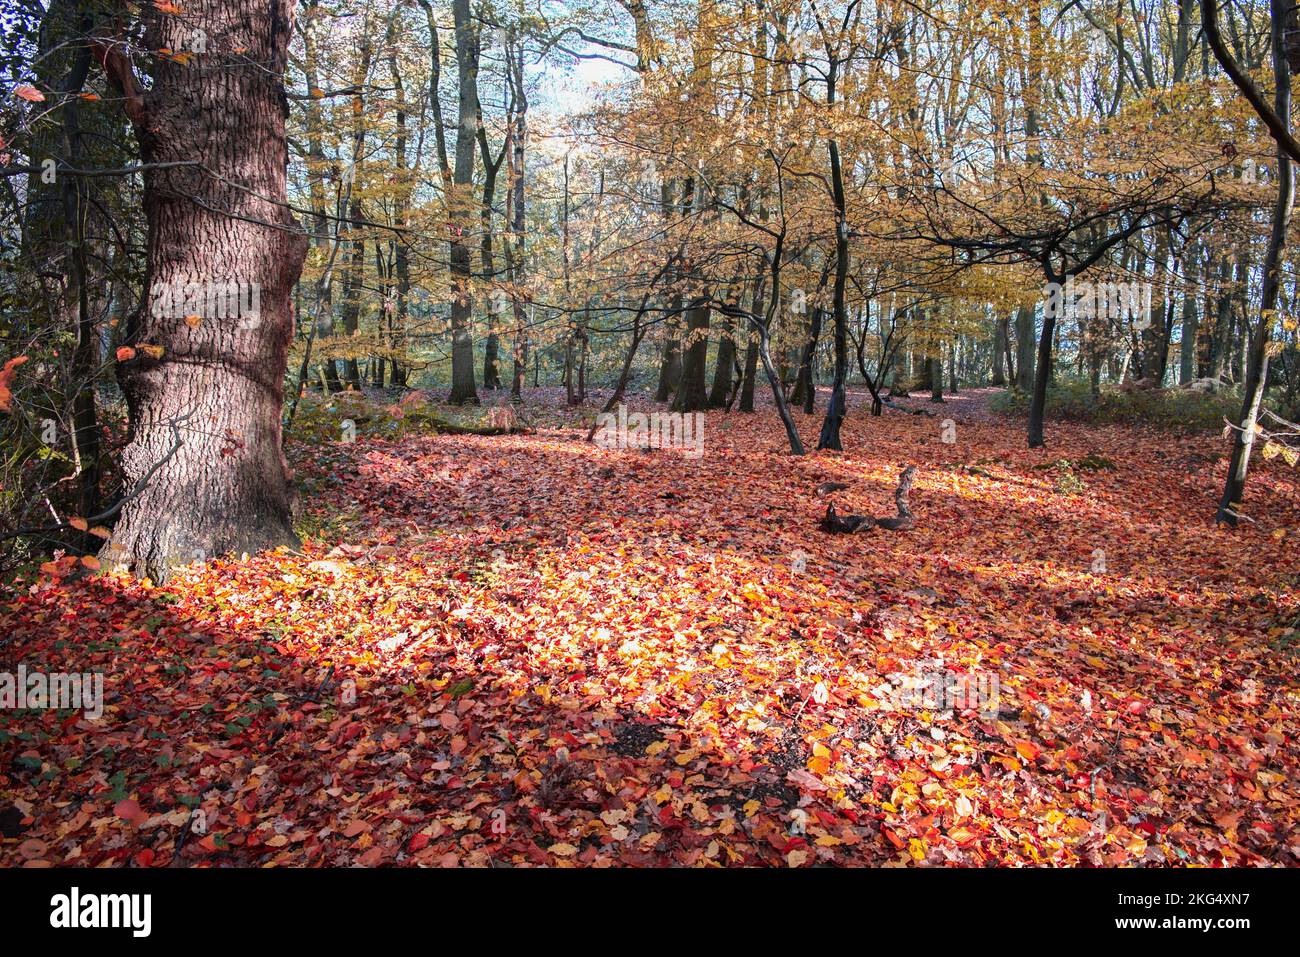 Herbstfarben im Wald sehen zu dieser Jahreszeit in Großbritannien gut aus. Schöne Gelb- und Goldbraun-Darstellungen vor blauem Himmel. Stockfoto